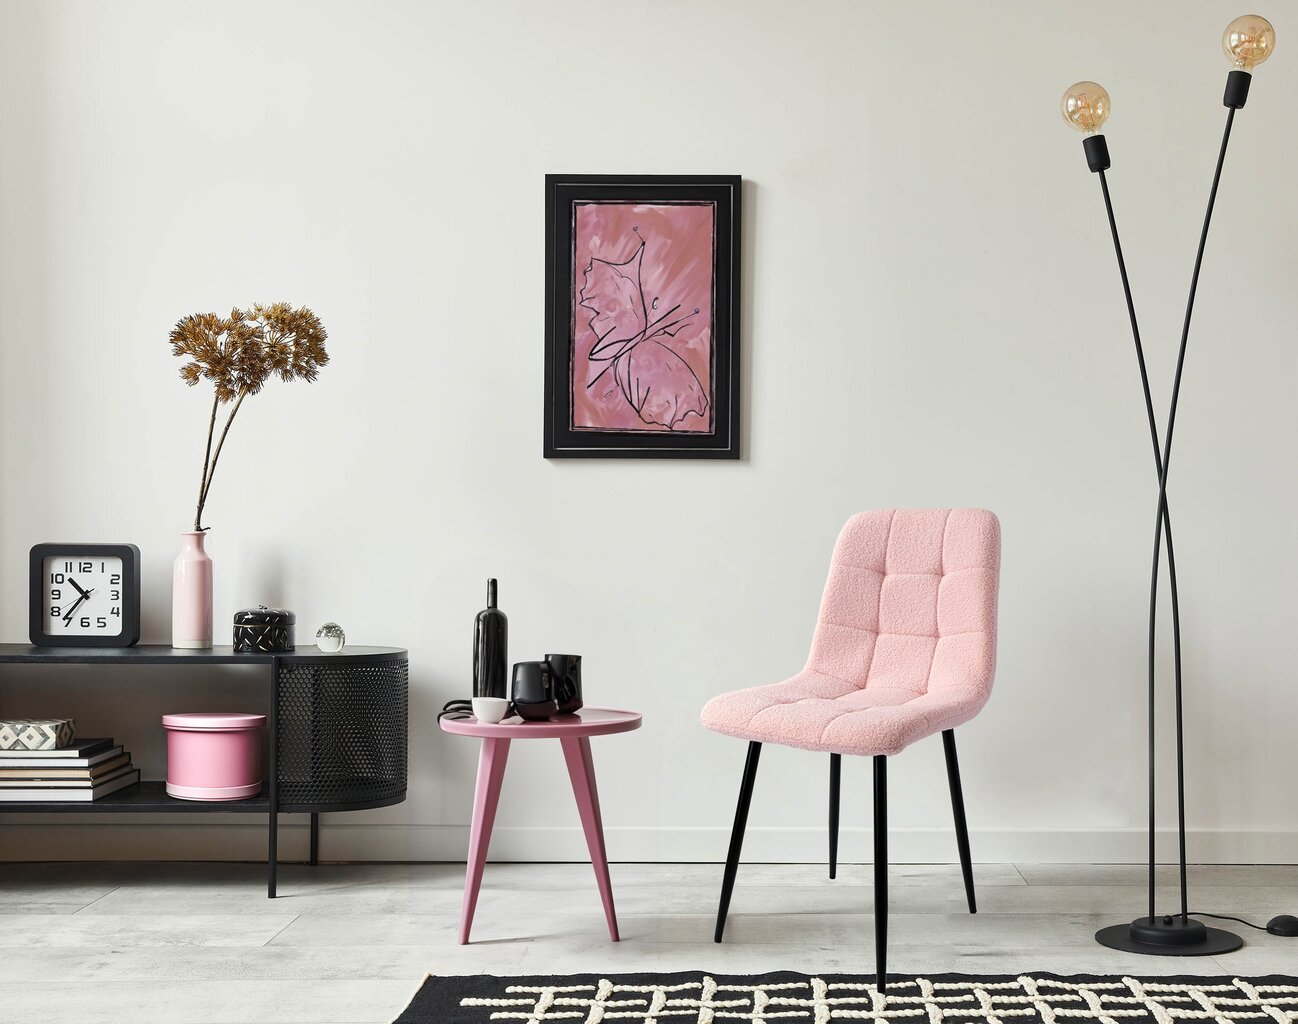 Kėdė Teddy Denver, rožinė kaina ir informacija | Biuro kėdės | pigu.lt